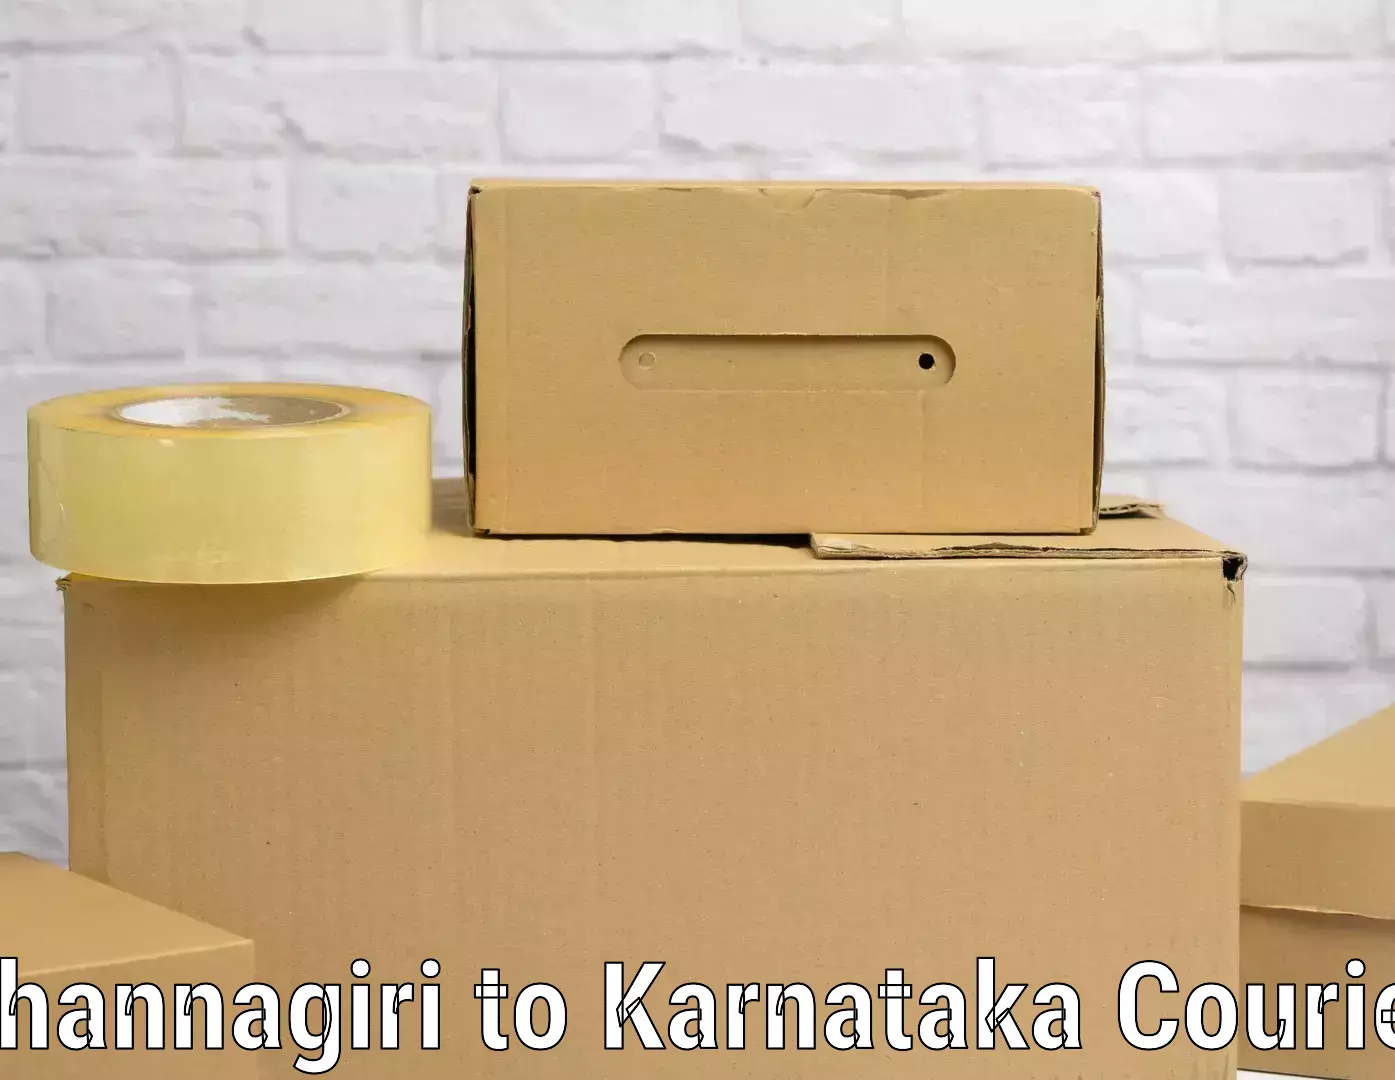 Unaccompanied luggage service in Channagiri to Karnataka